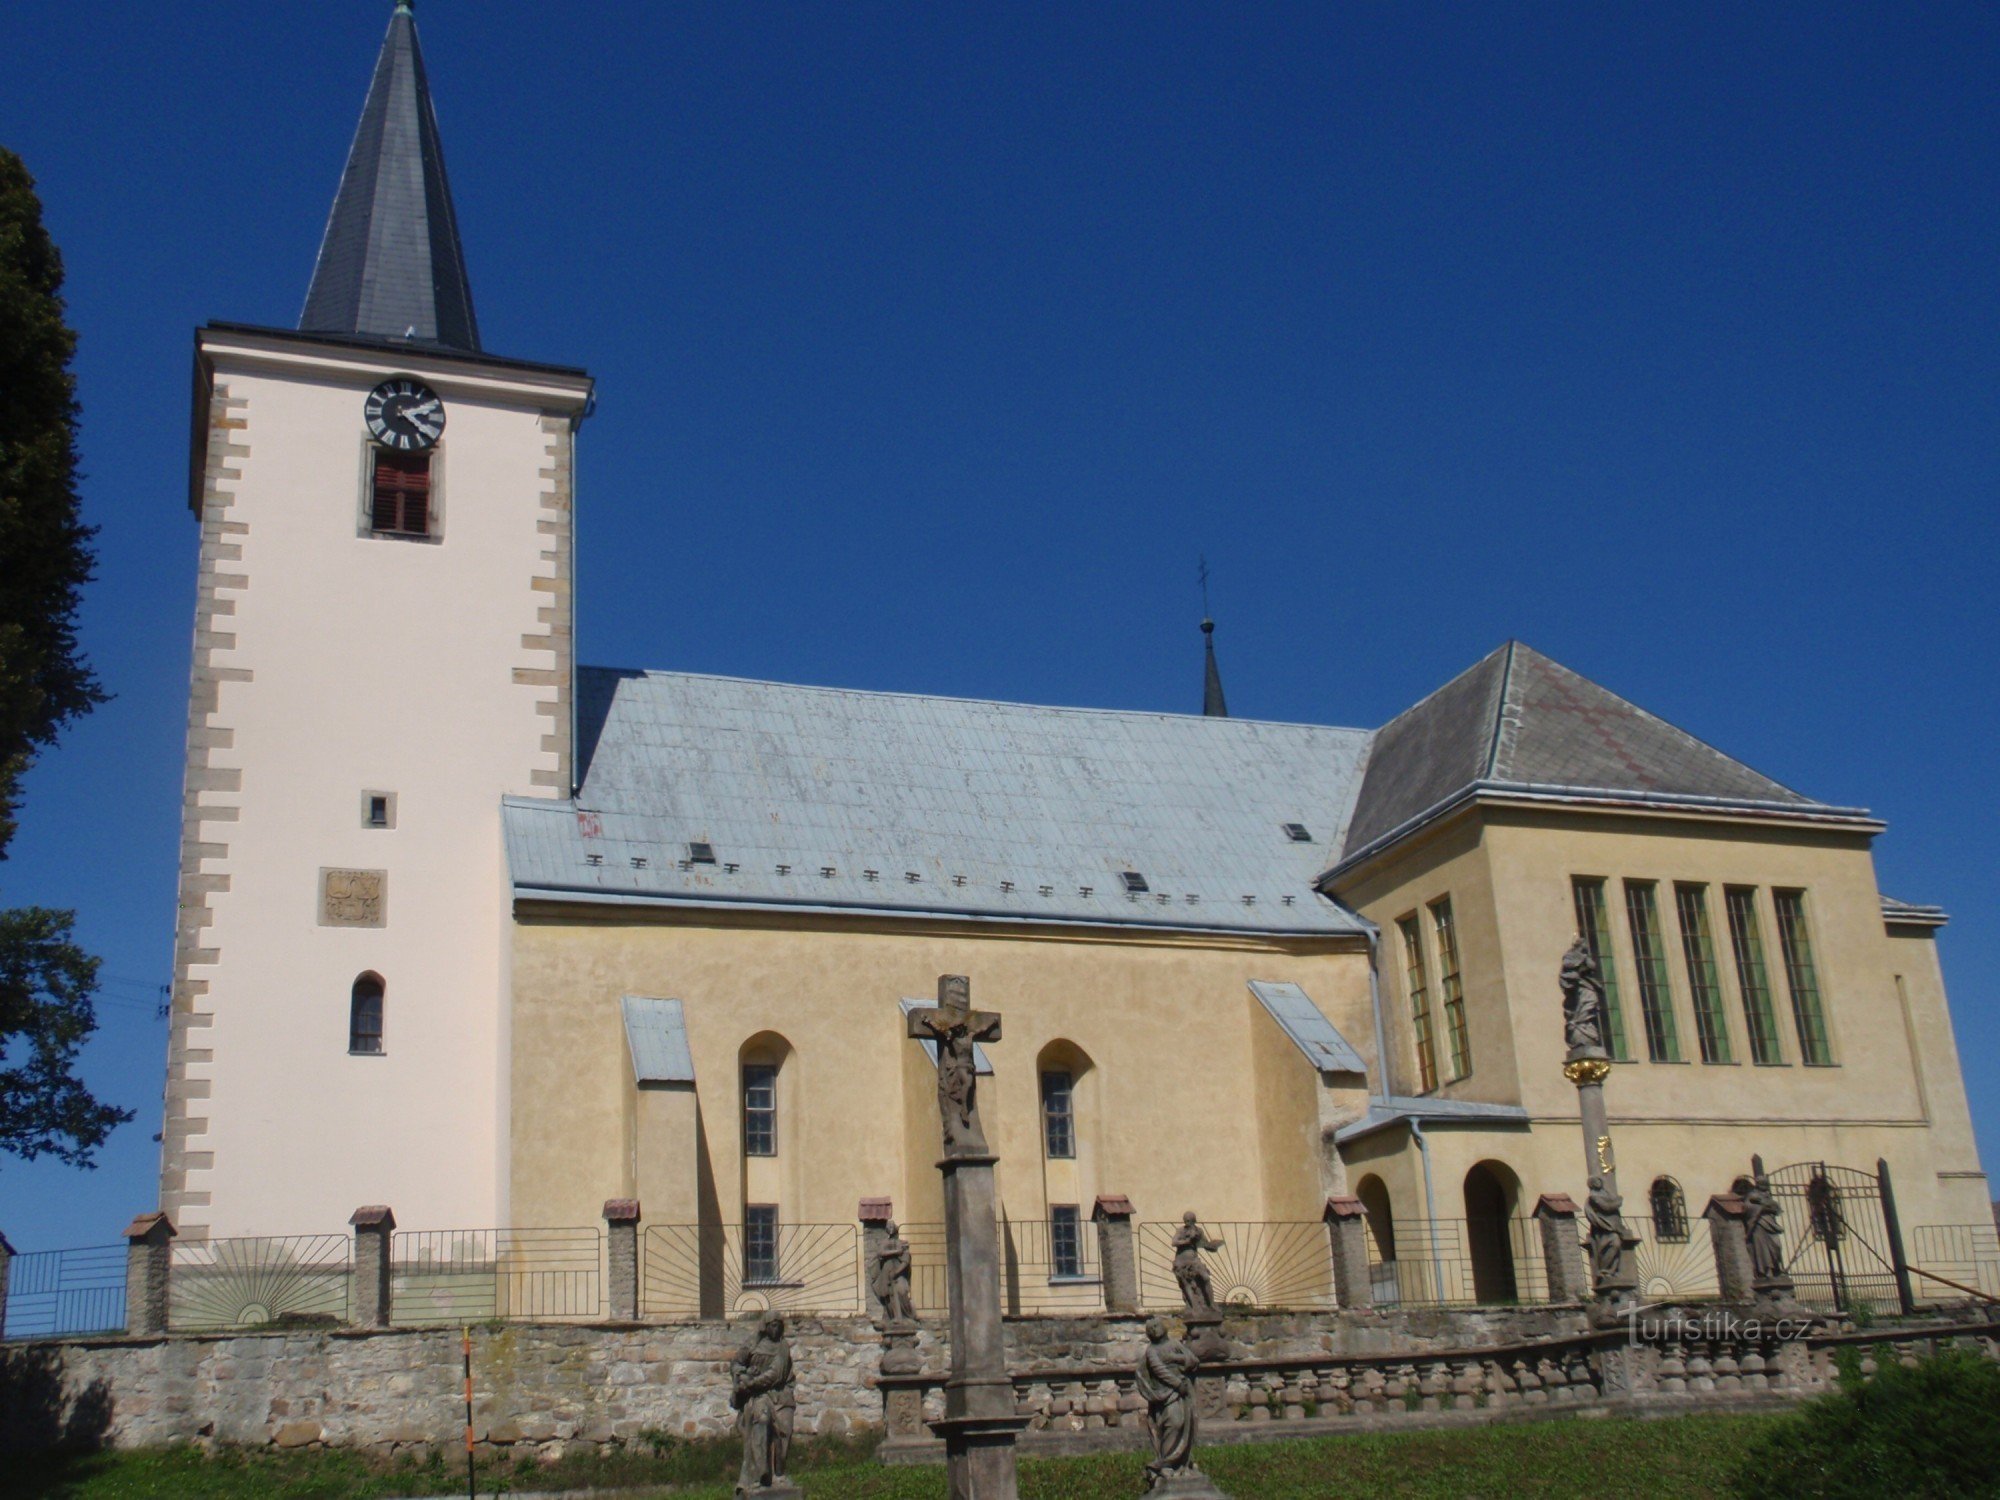 Церковь св. Йиржи в Кунчине